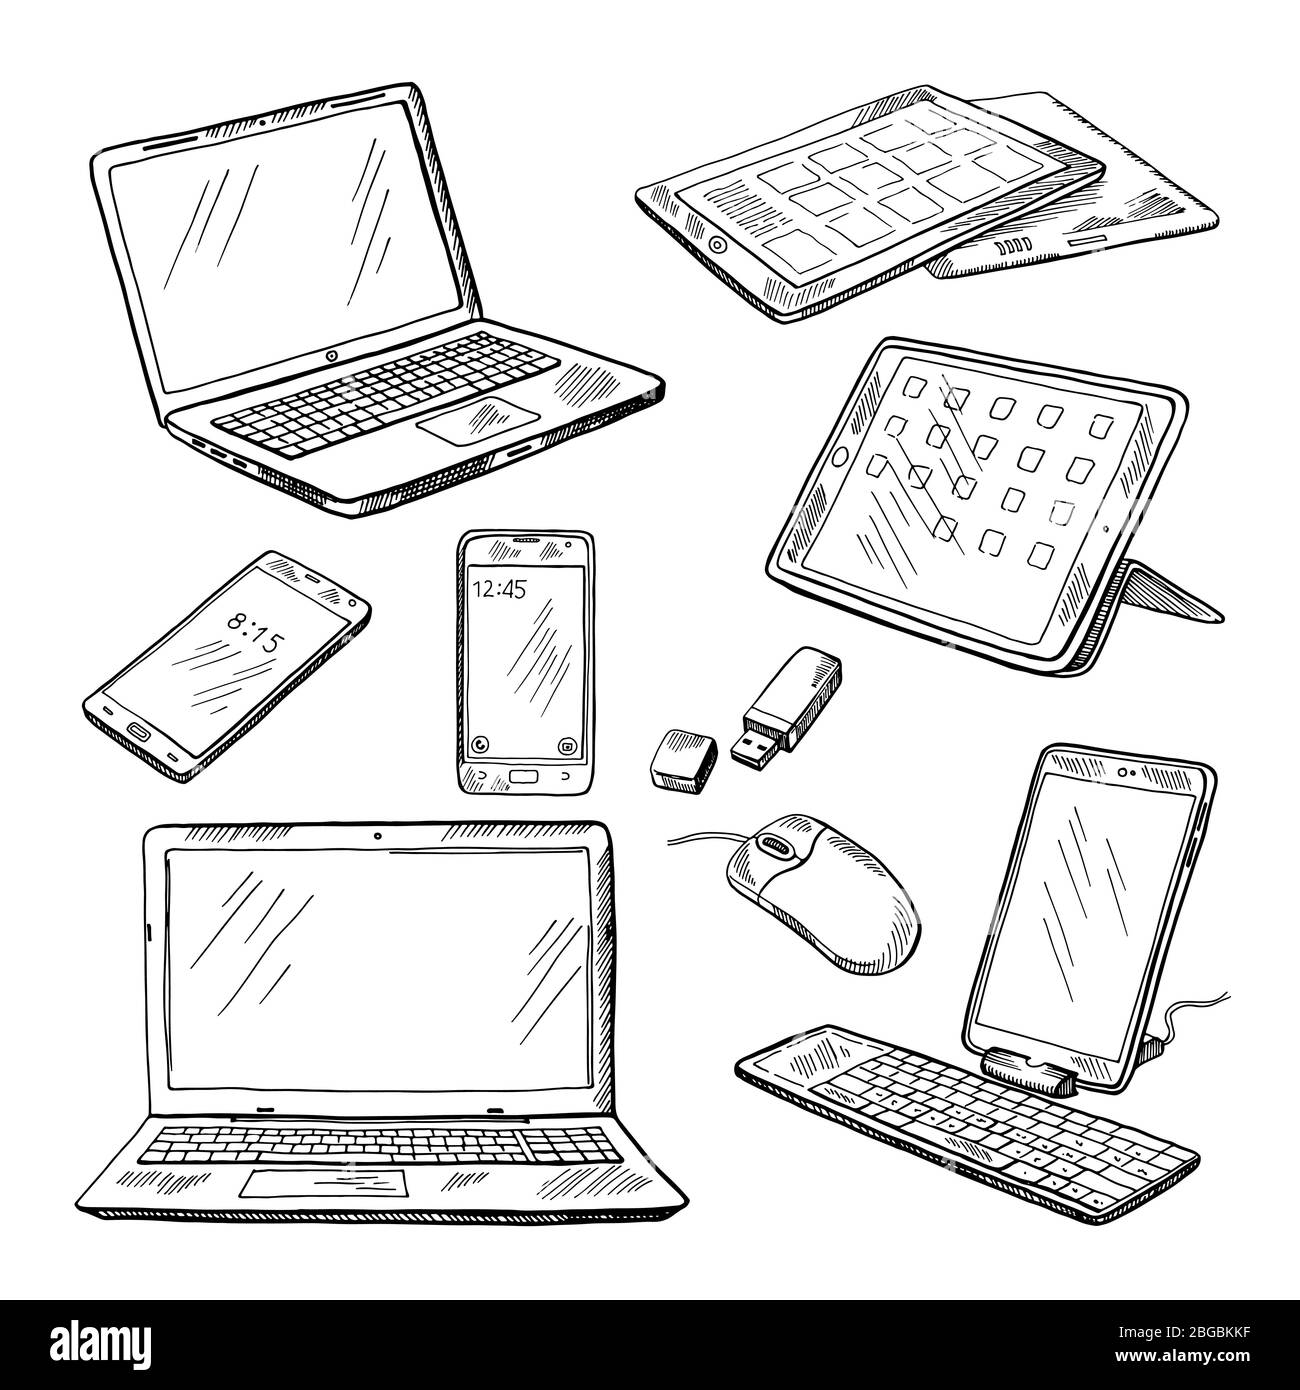 Doodle Illustrationen von verschiedenen Geräten Laptop, Smartphone, Tablet, pc und andere. Vektorbilder gesetzt Stock Vektor